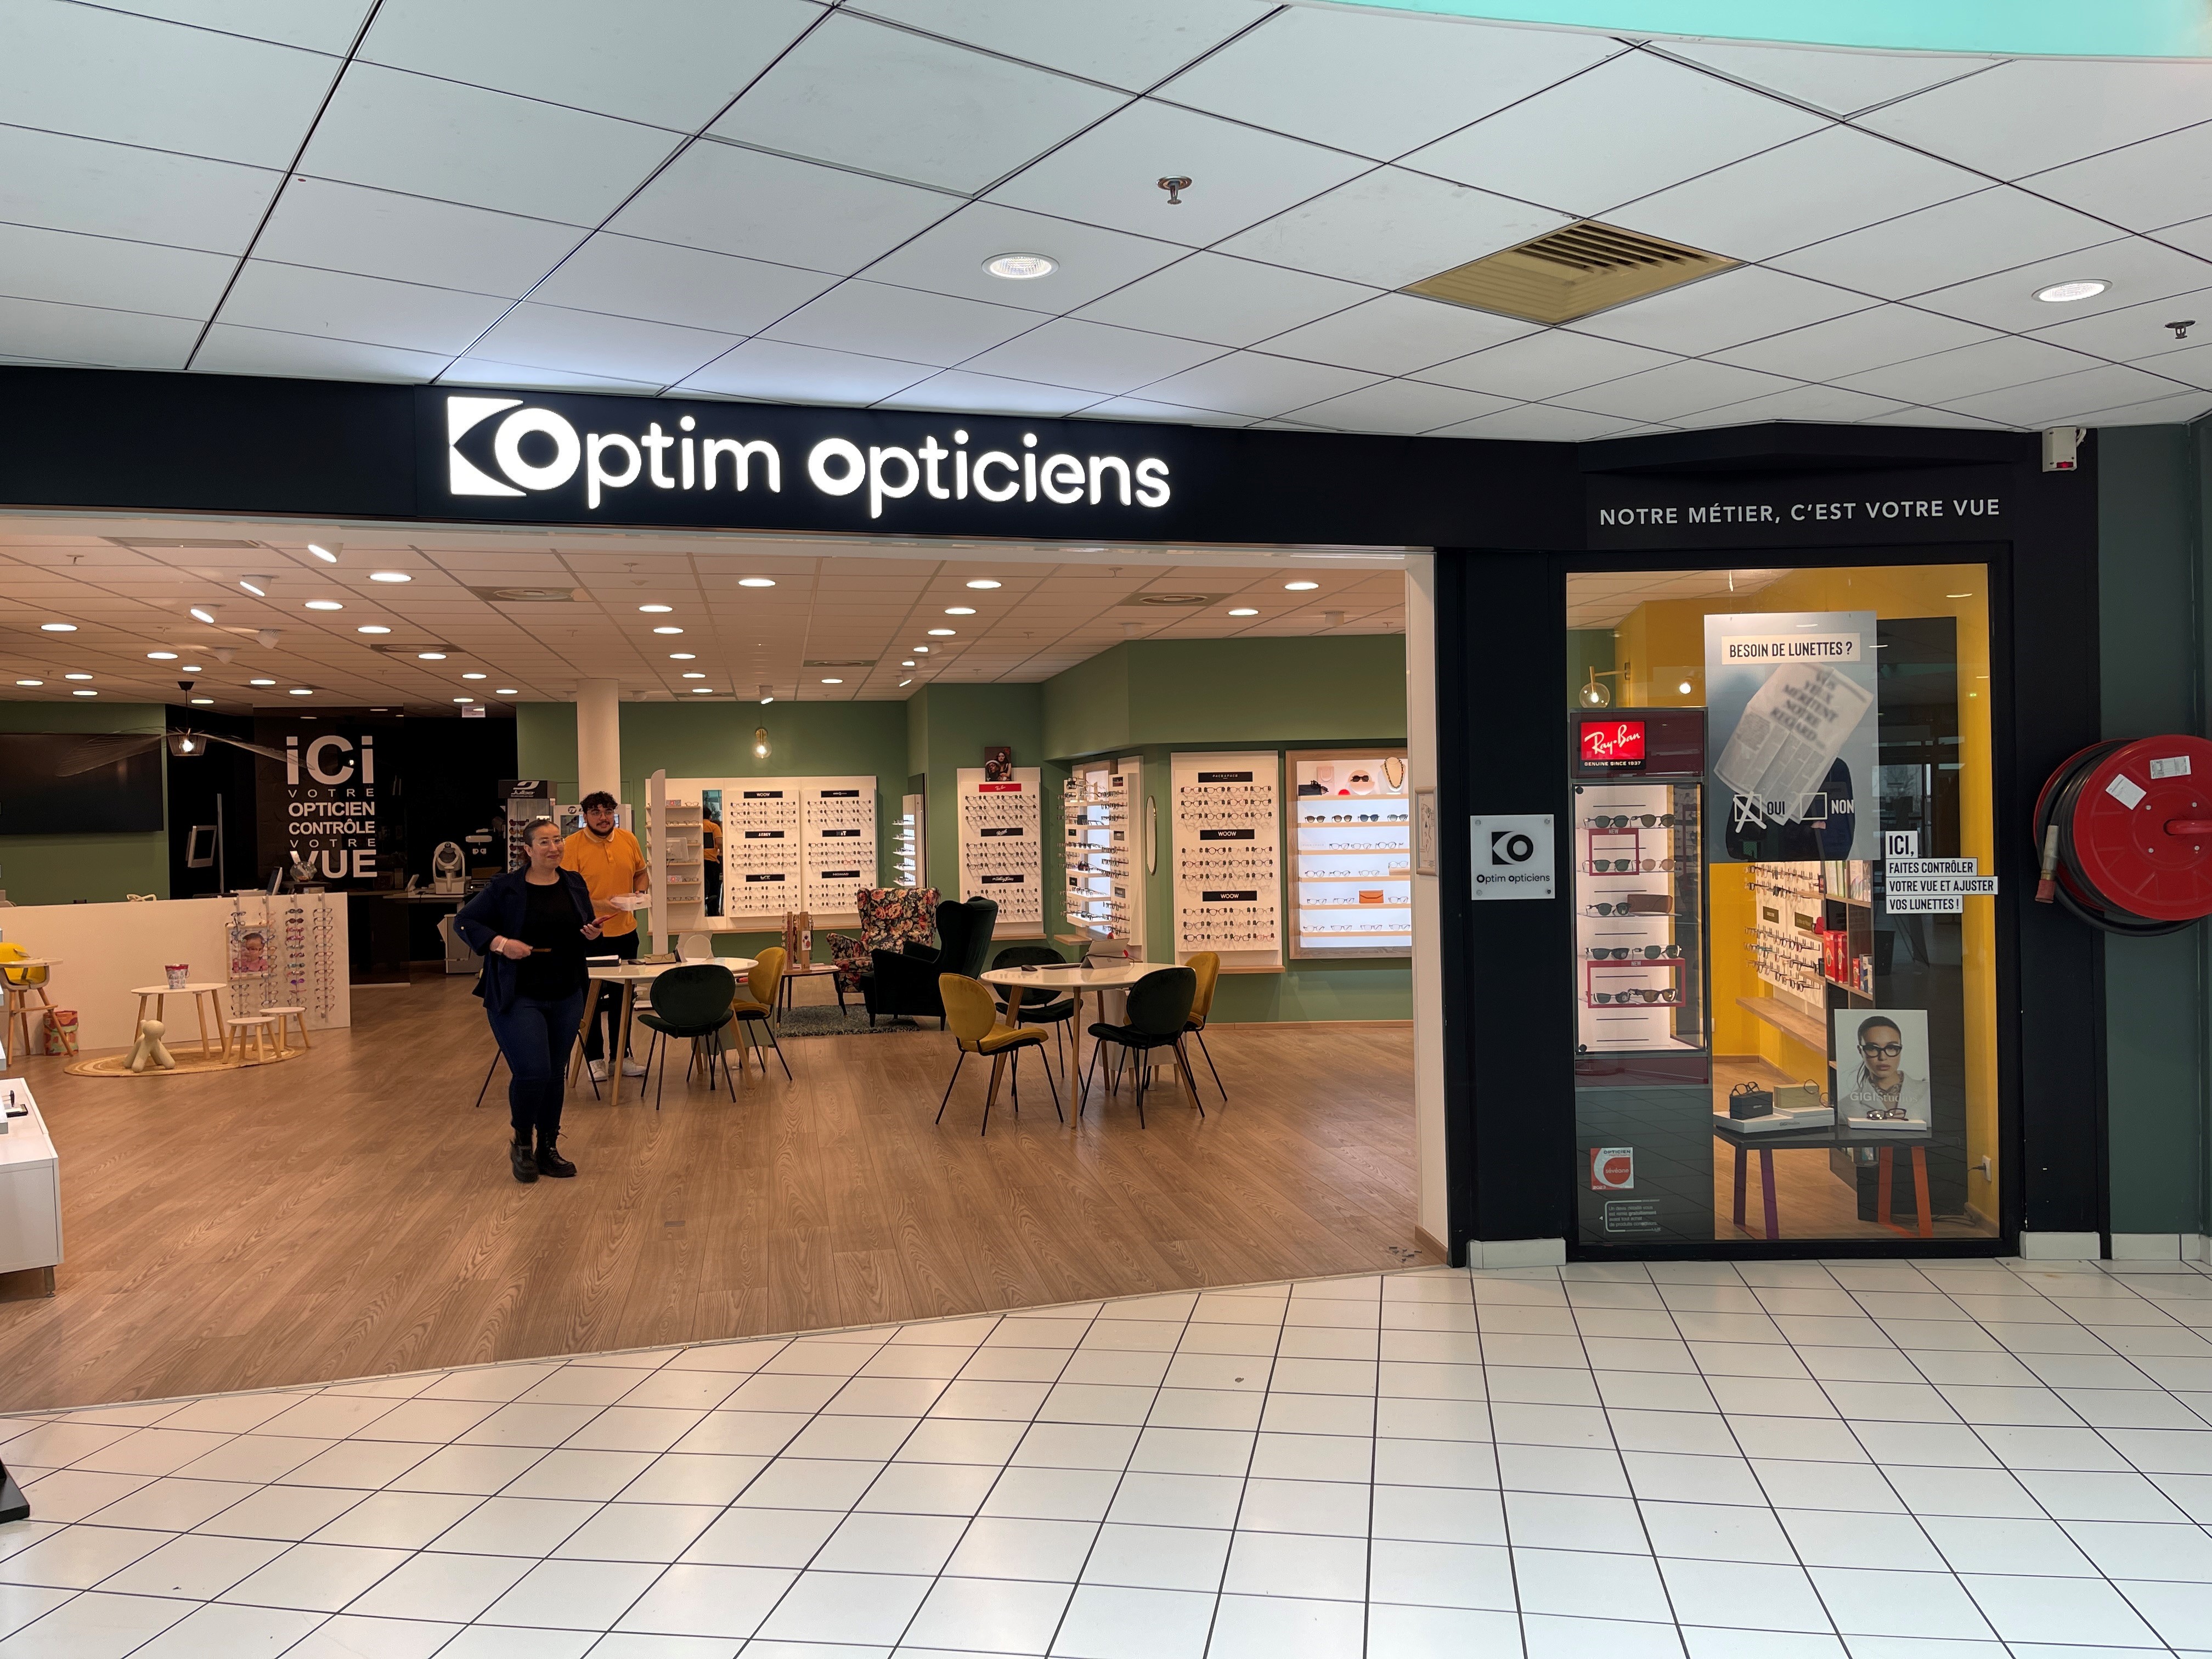 Opticien OPTIM OPTICIENS spécialiste de l'optique et des lunettes pour enfants à CEYRAT - Optikid